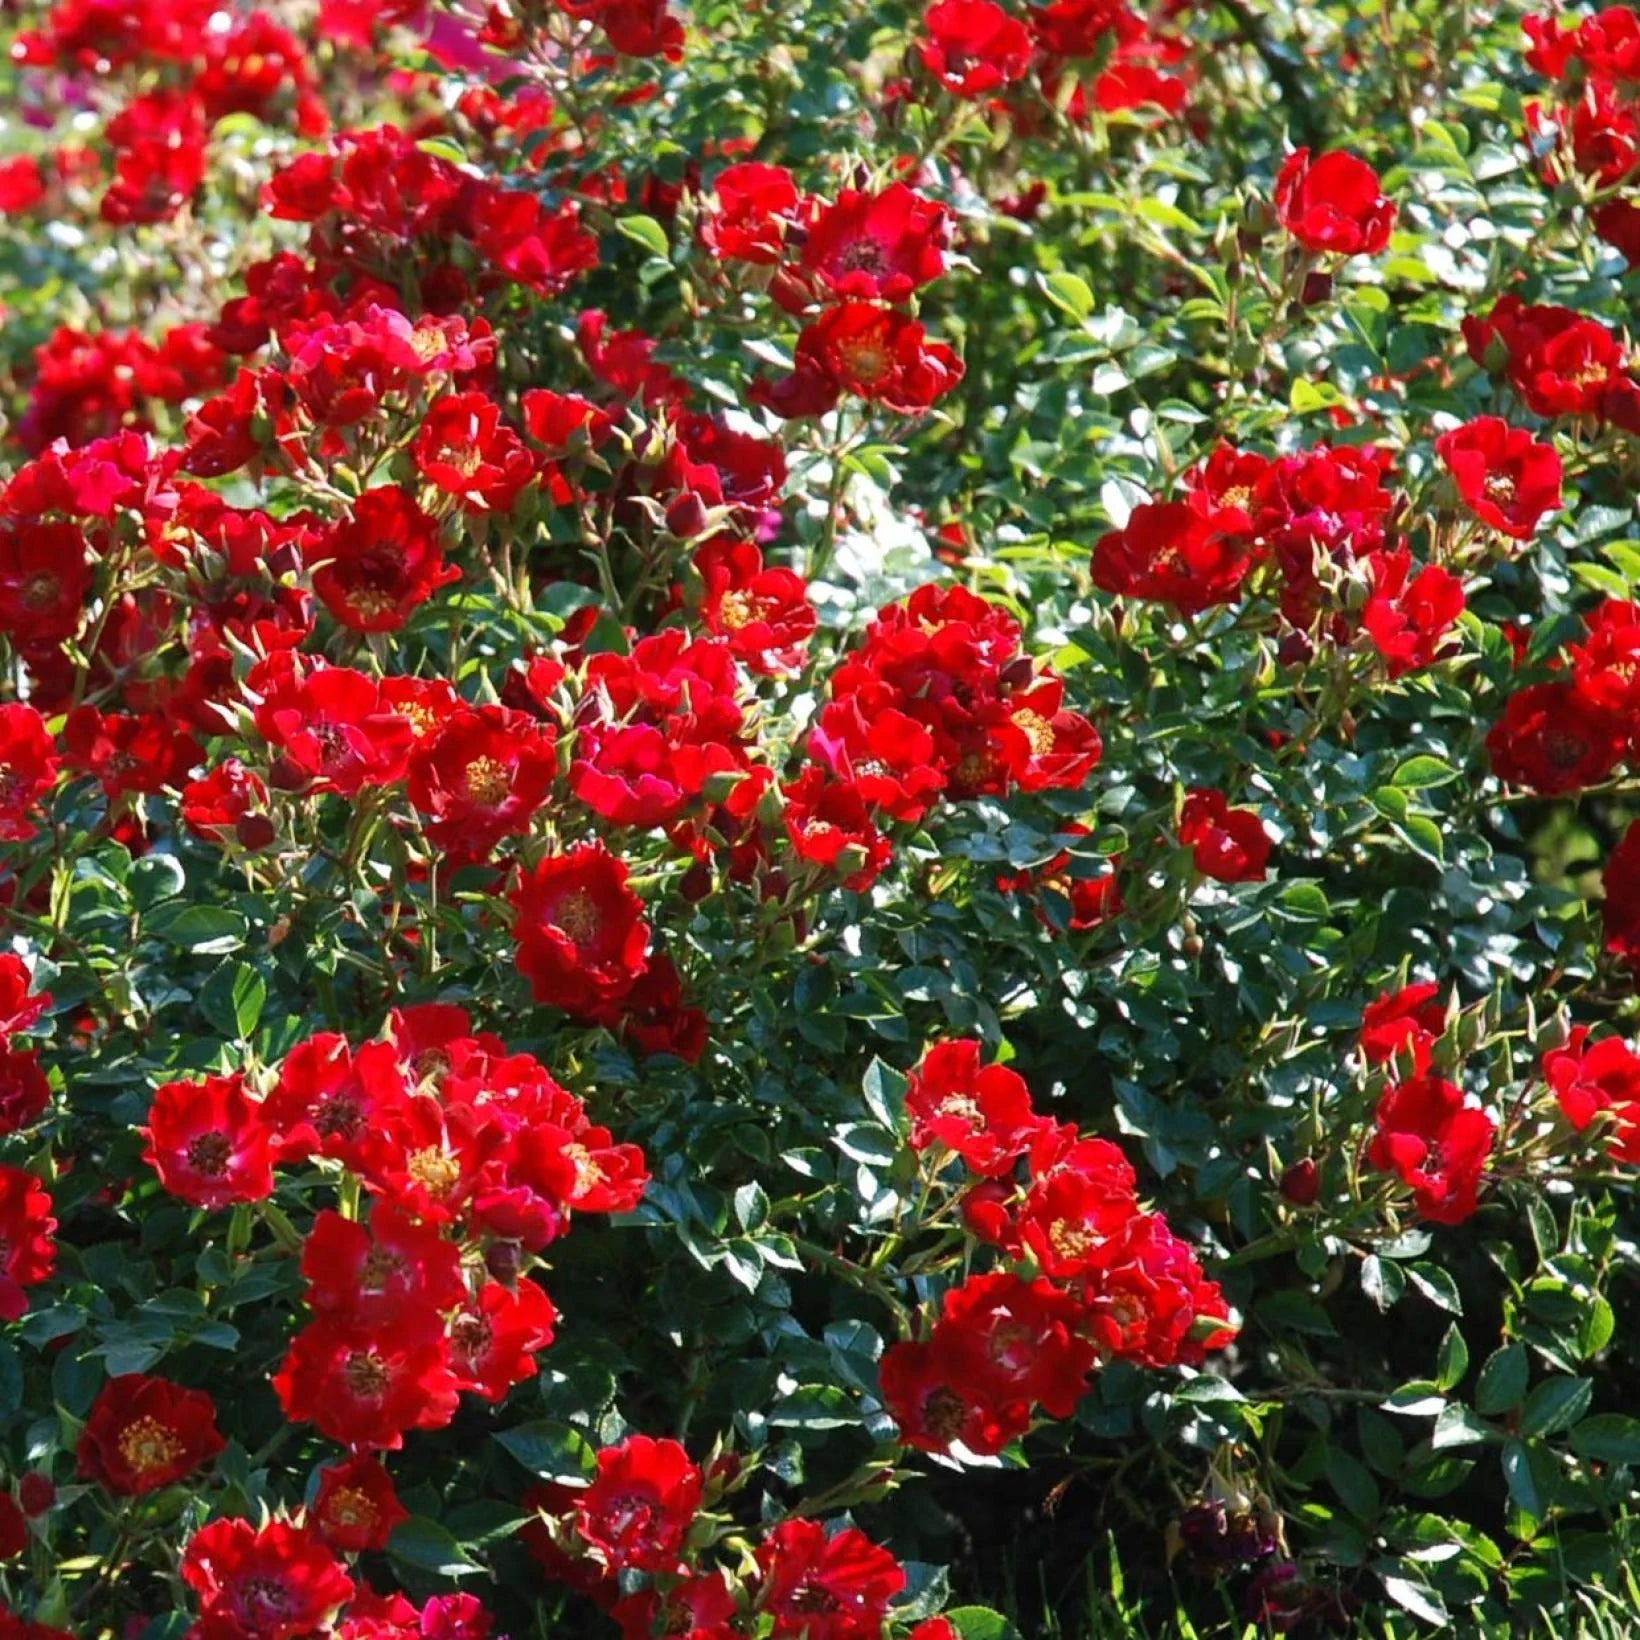 Rosa Red Cascade - Volume 3L / 30-40cm